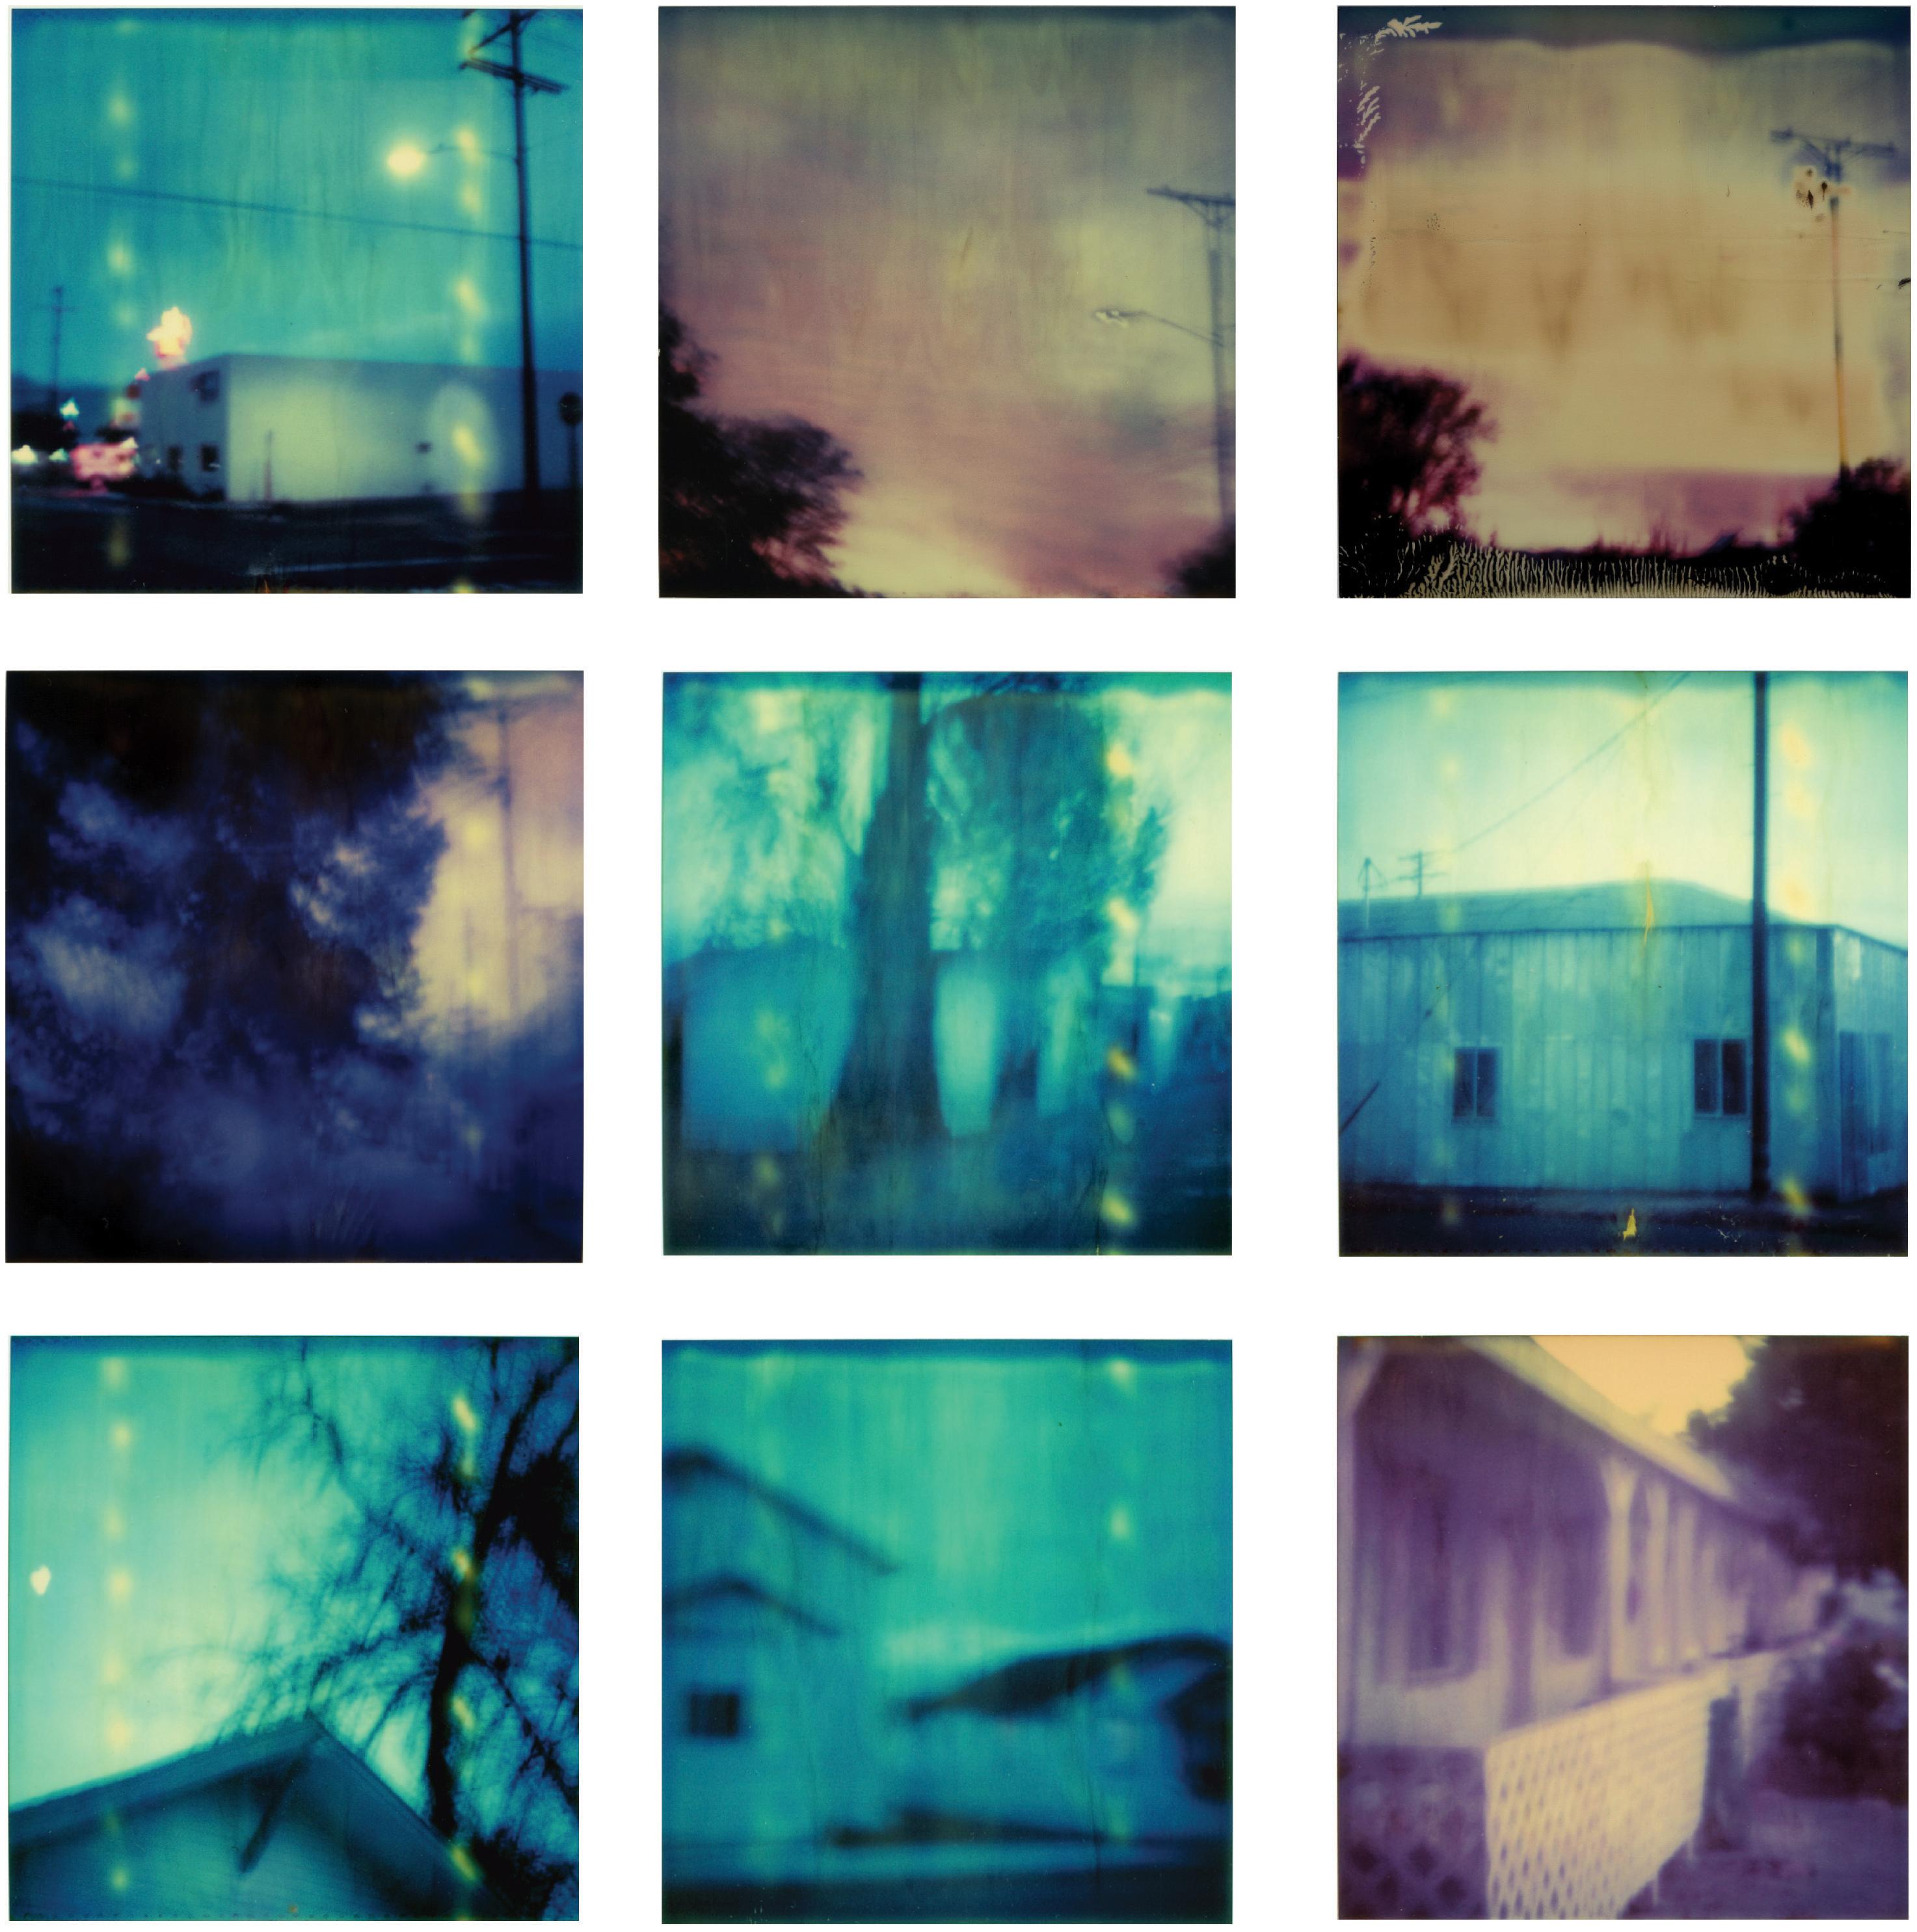 Stefanie Schneider Landscape Photograph - Dusk (The Last Picture Show) - analog, 9 pieces, sunset